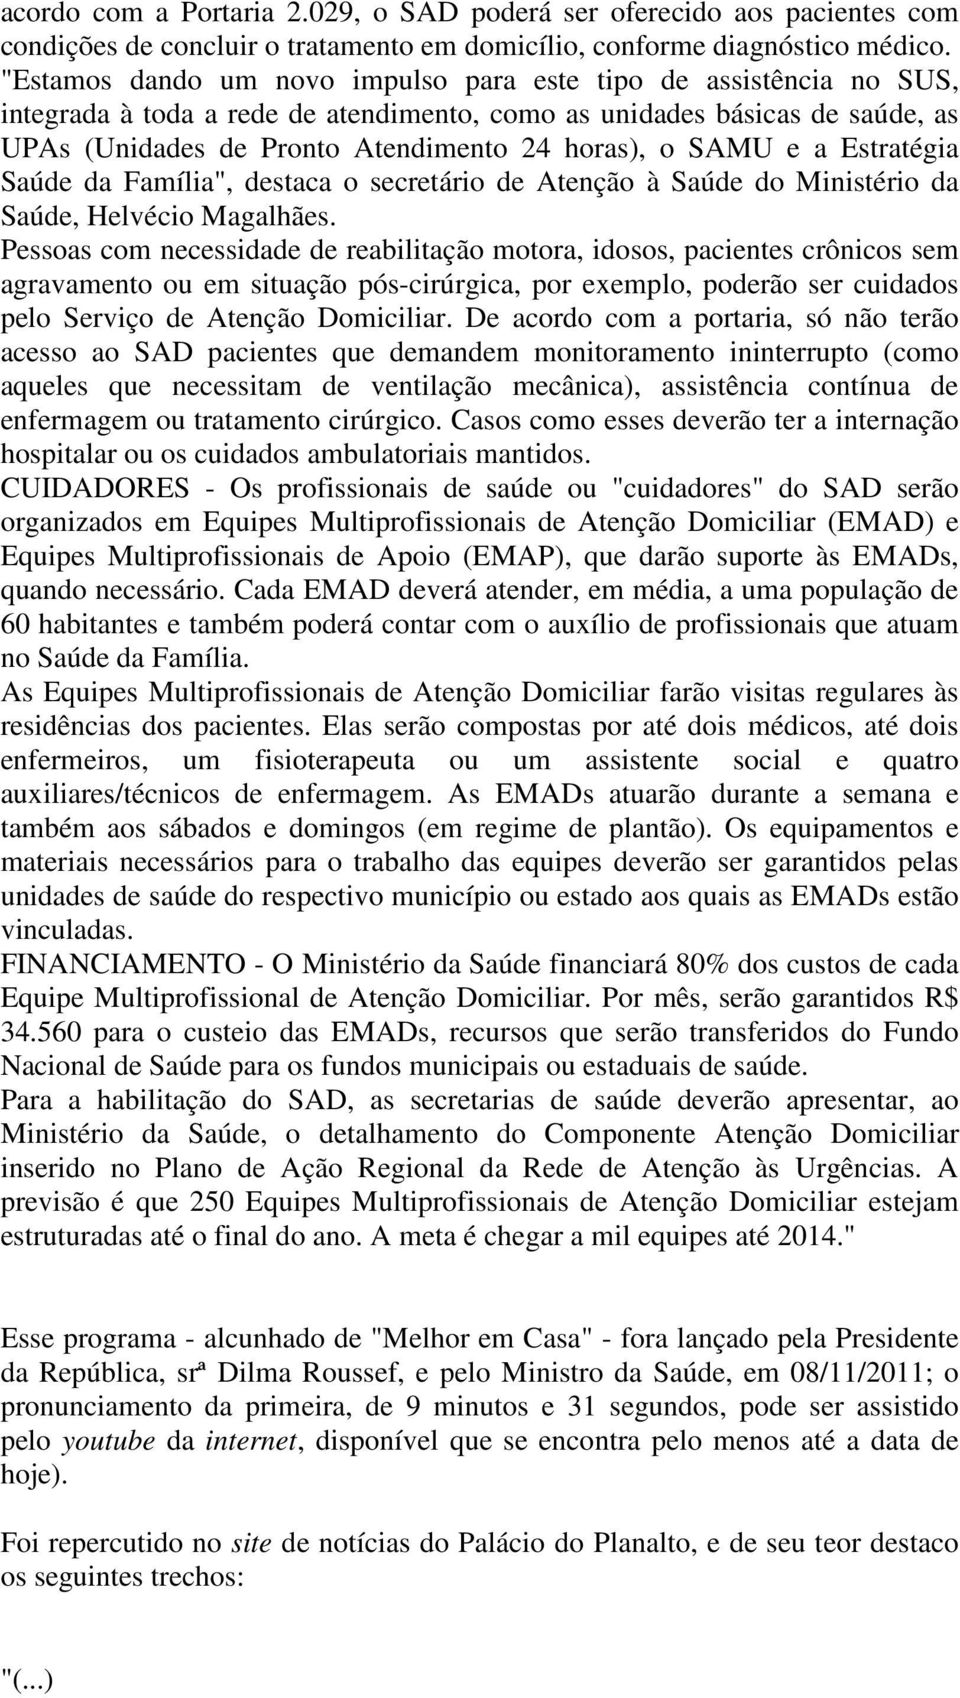 SAMU e a Estratégia Saúde da Família", destaca o secretário de Atenção à Saúde do Ministério da Saúde, Helvécio Magalhães.